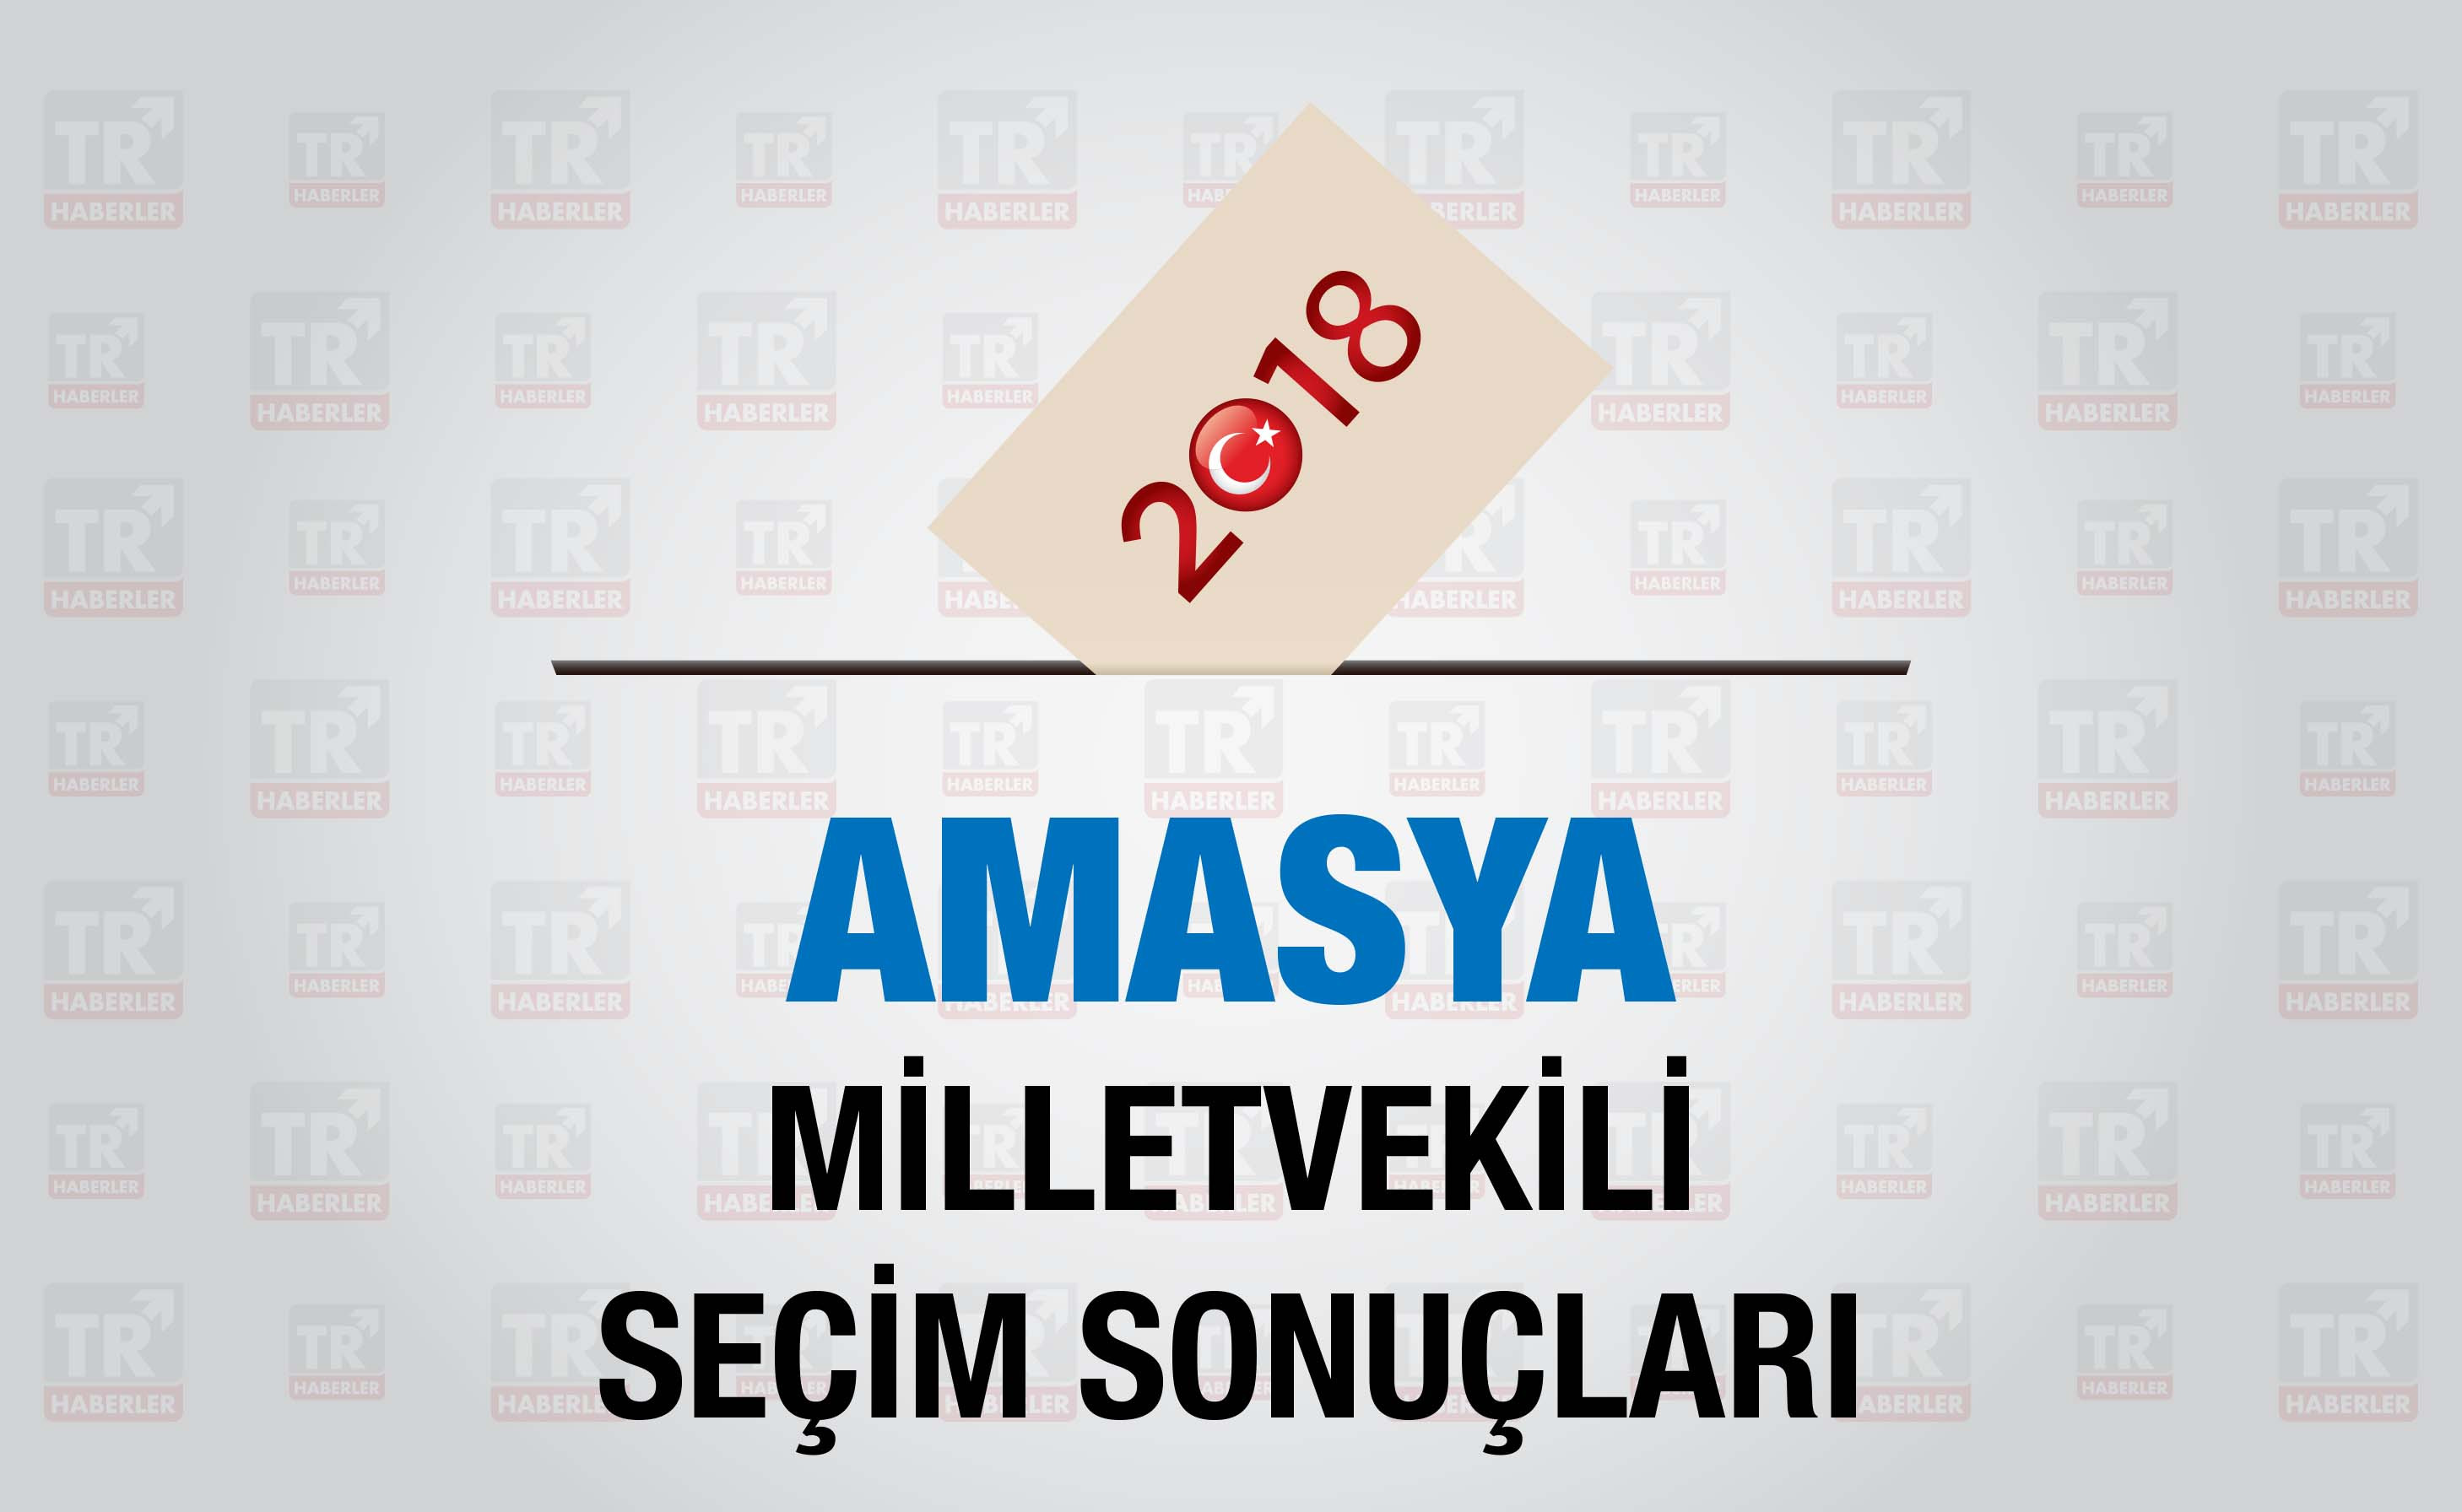 Amasya seçim sonuçları : Amasya Milletvekili seçim sonuçları - Seçim 2018